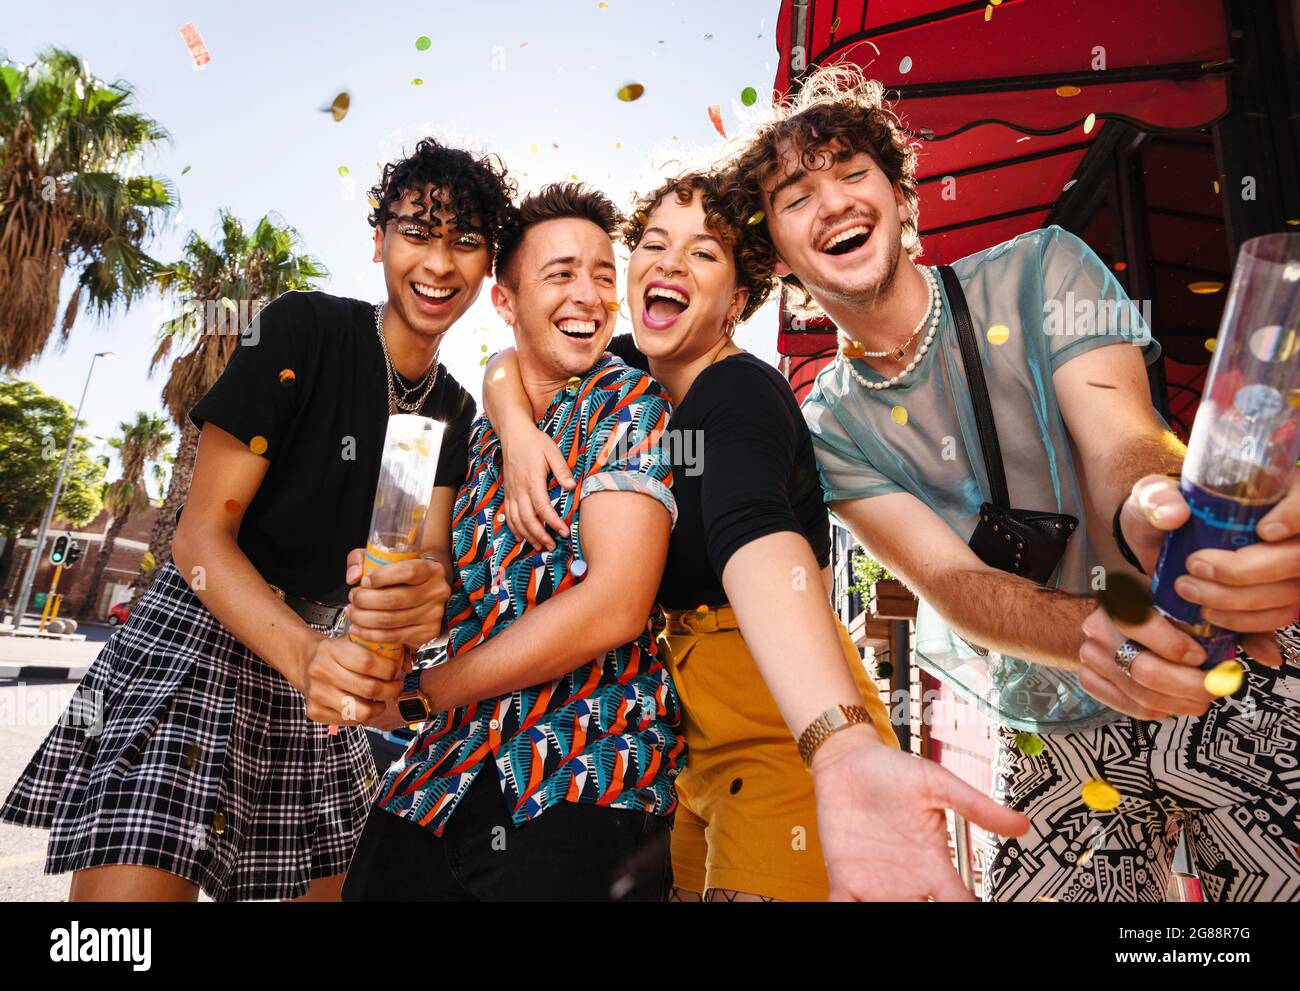 Cuatro amigos celebrando con confeti al aire libre. Grupo de gente queer feliz sonriendo alegremente mientras celebraba su amistad. Amigos que enlazan un Foto de stock